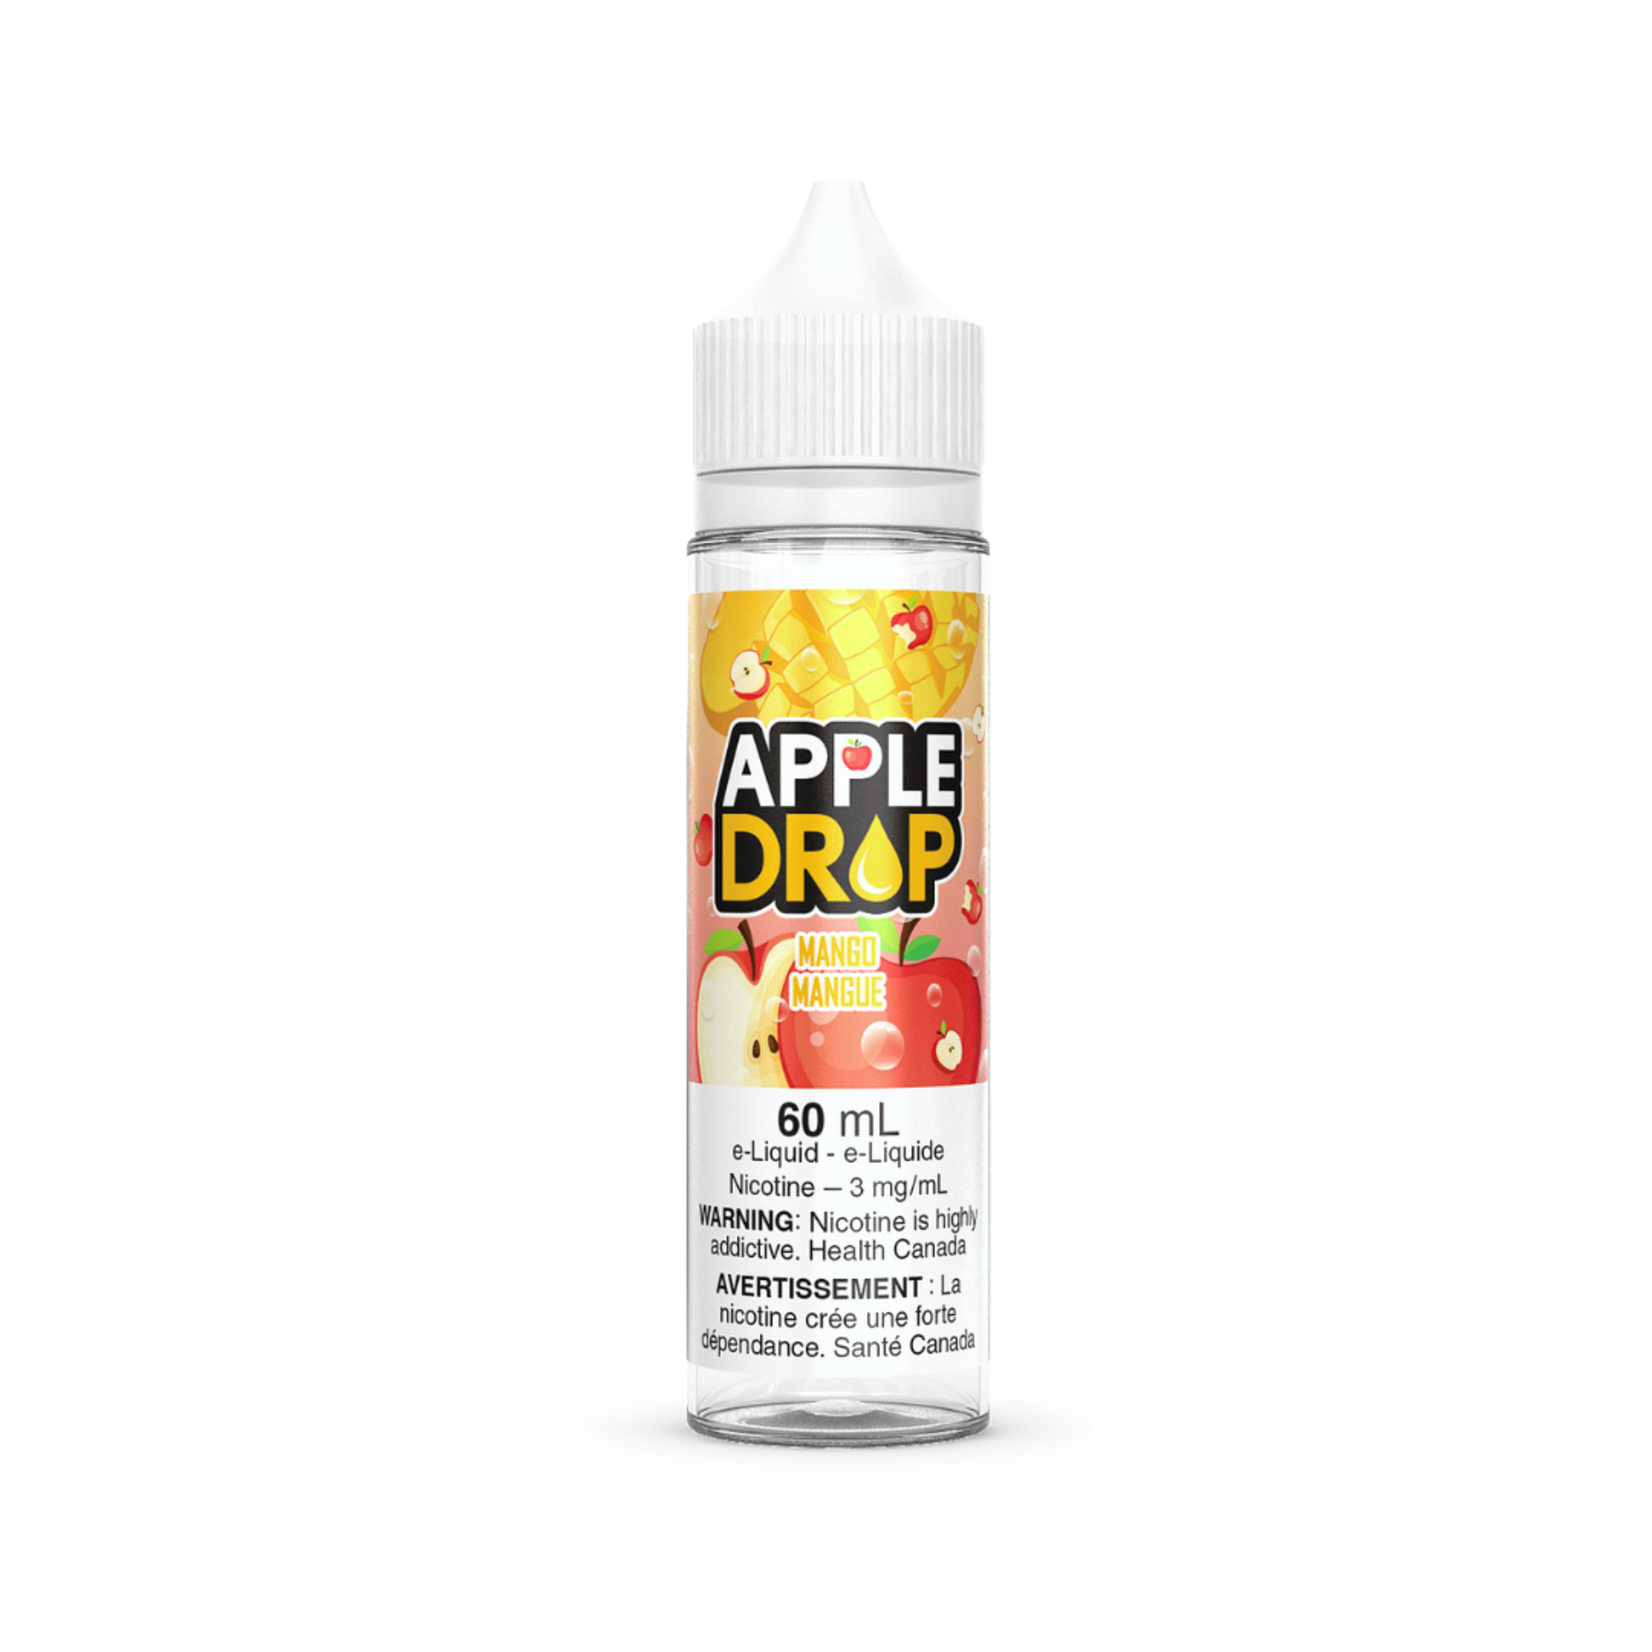 Apple Drop Vape Juice